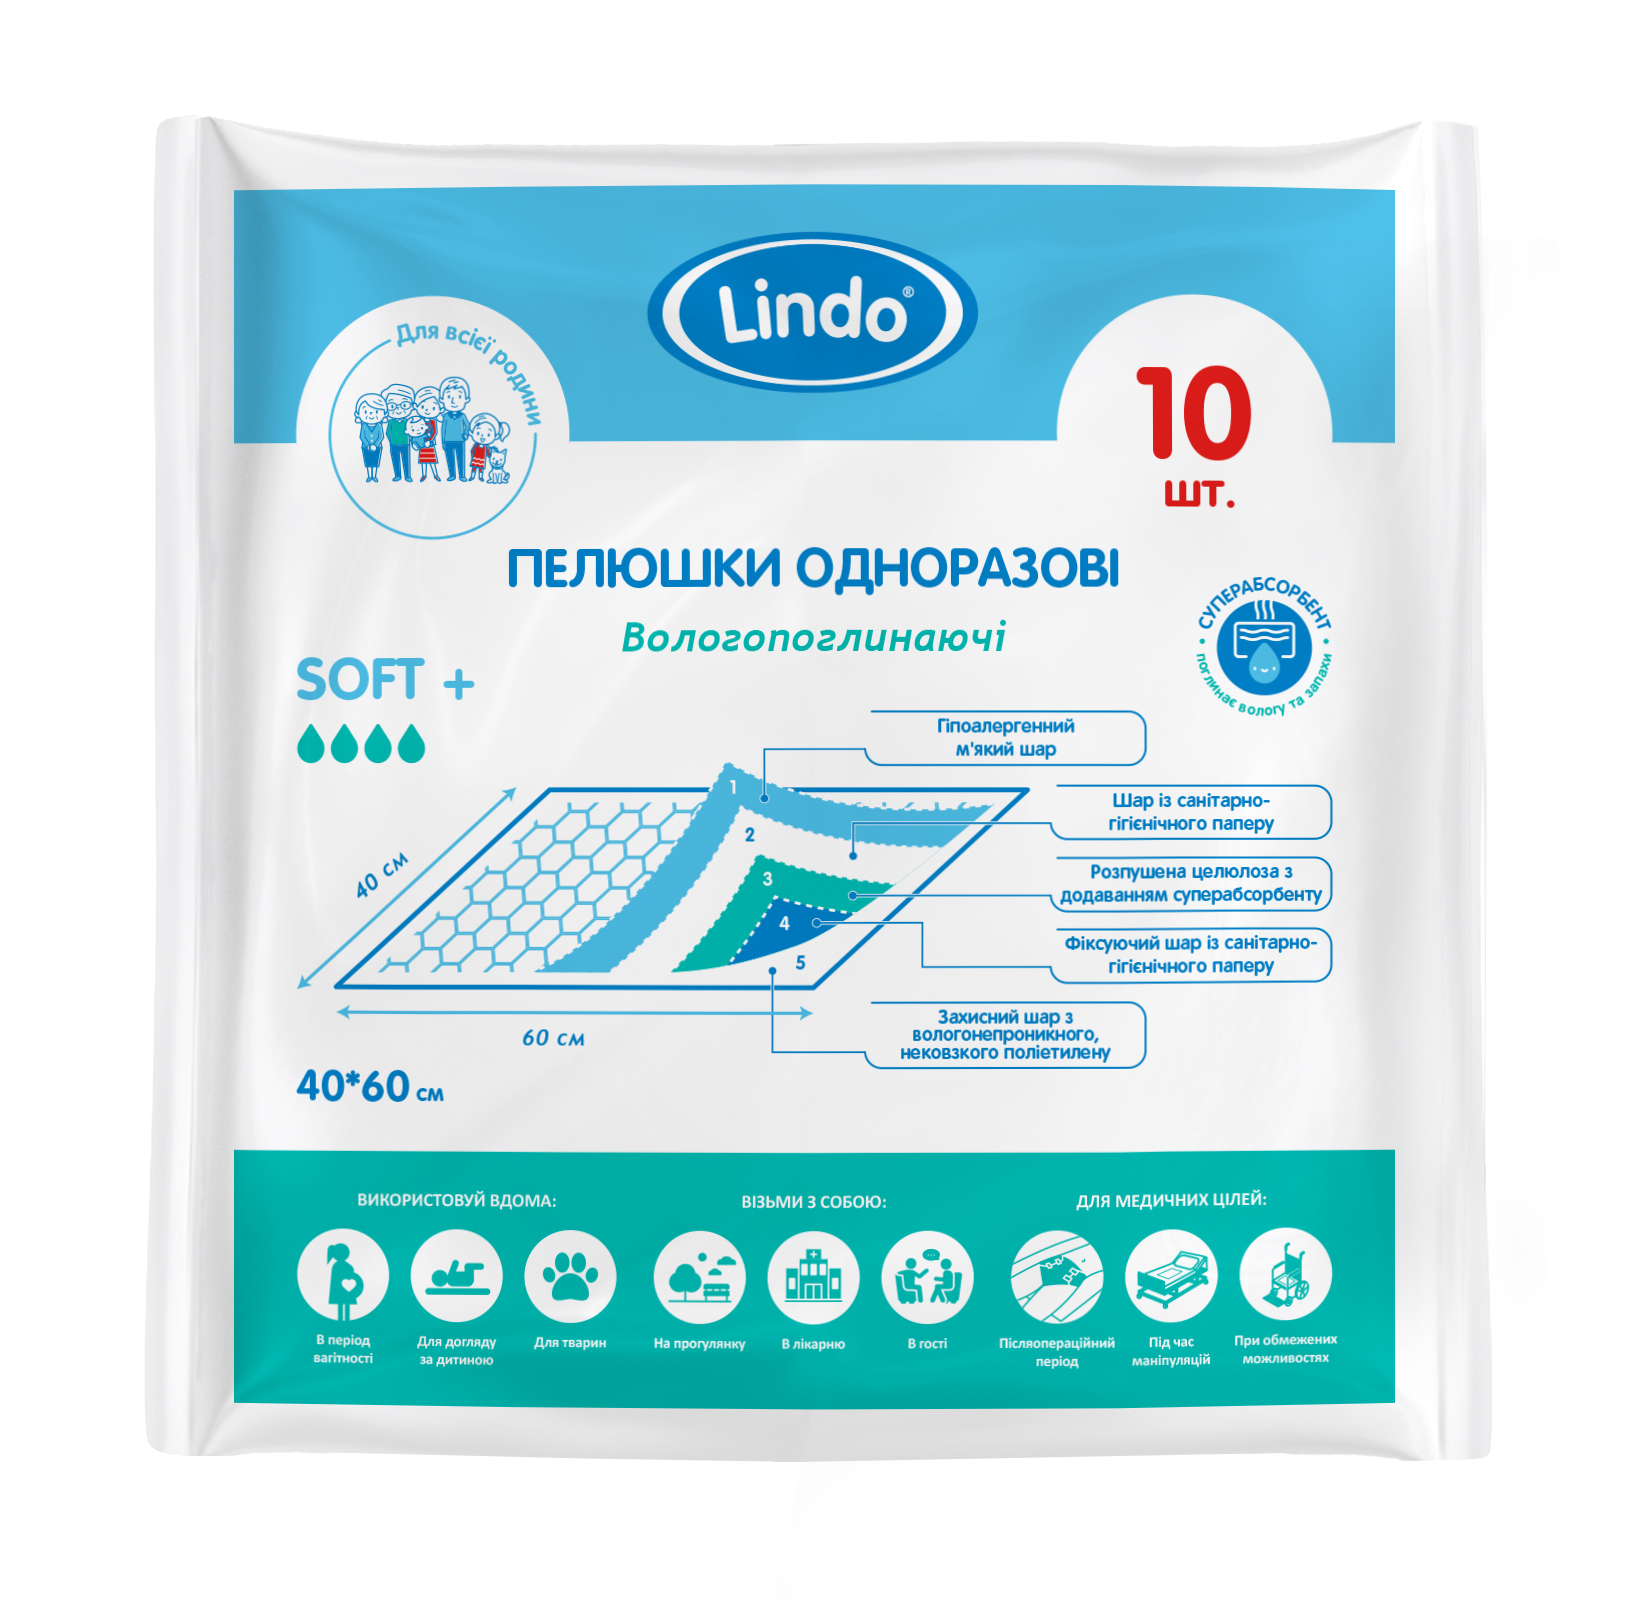 Одноразовые гигиенические пеленки Lindo, влагопоглощающие, 40х60 см, 10 шт. (U 51801) - фото 1